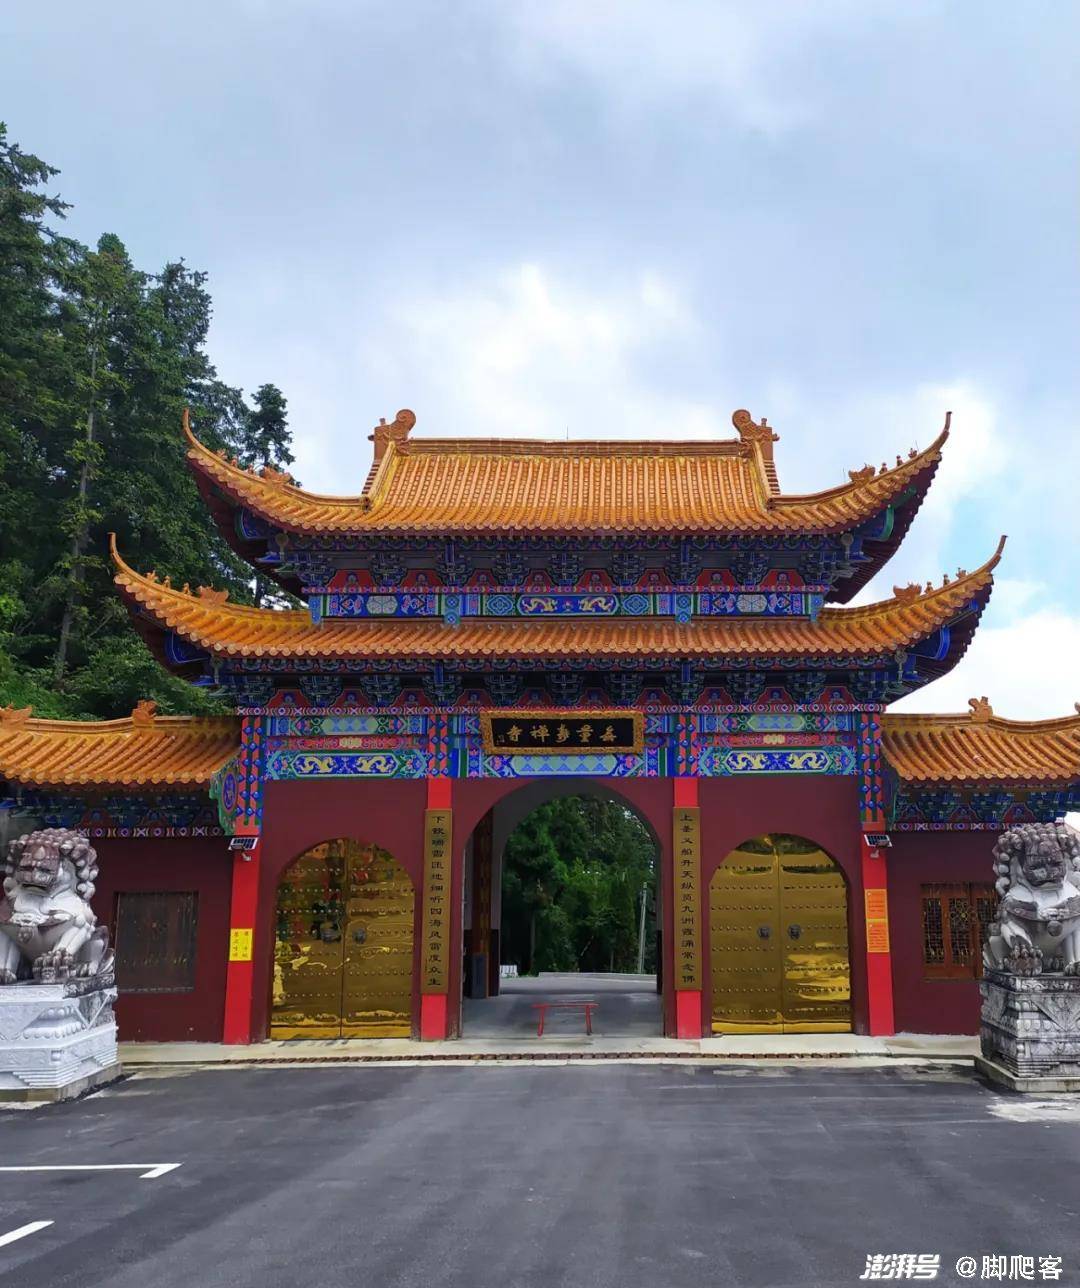 经历长期荒废之后,1987 年云关古寺得以重建,并定名为云关无量寿禅寺